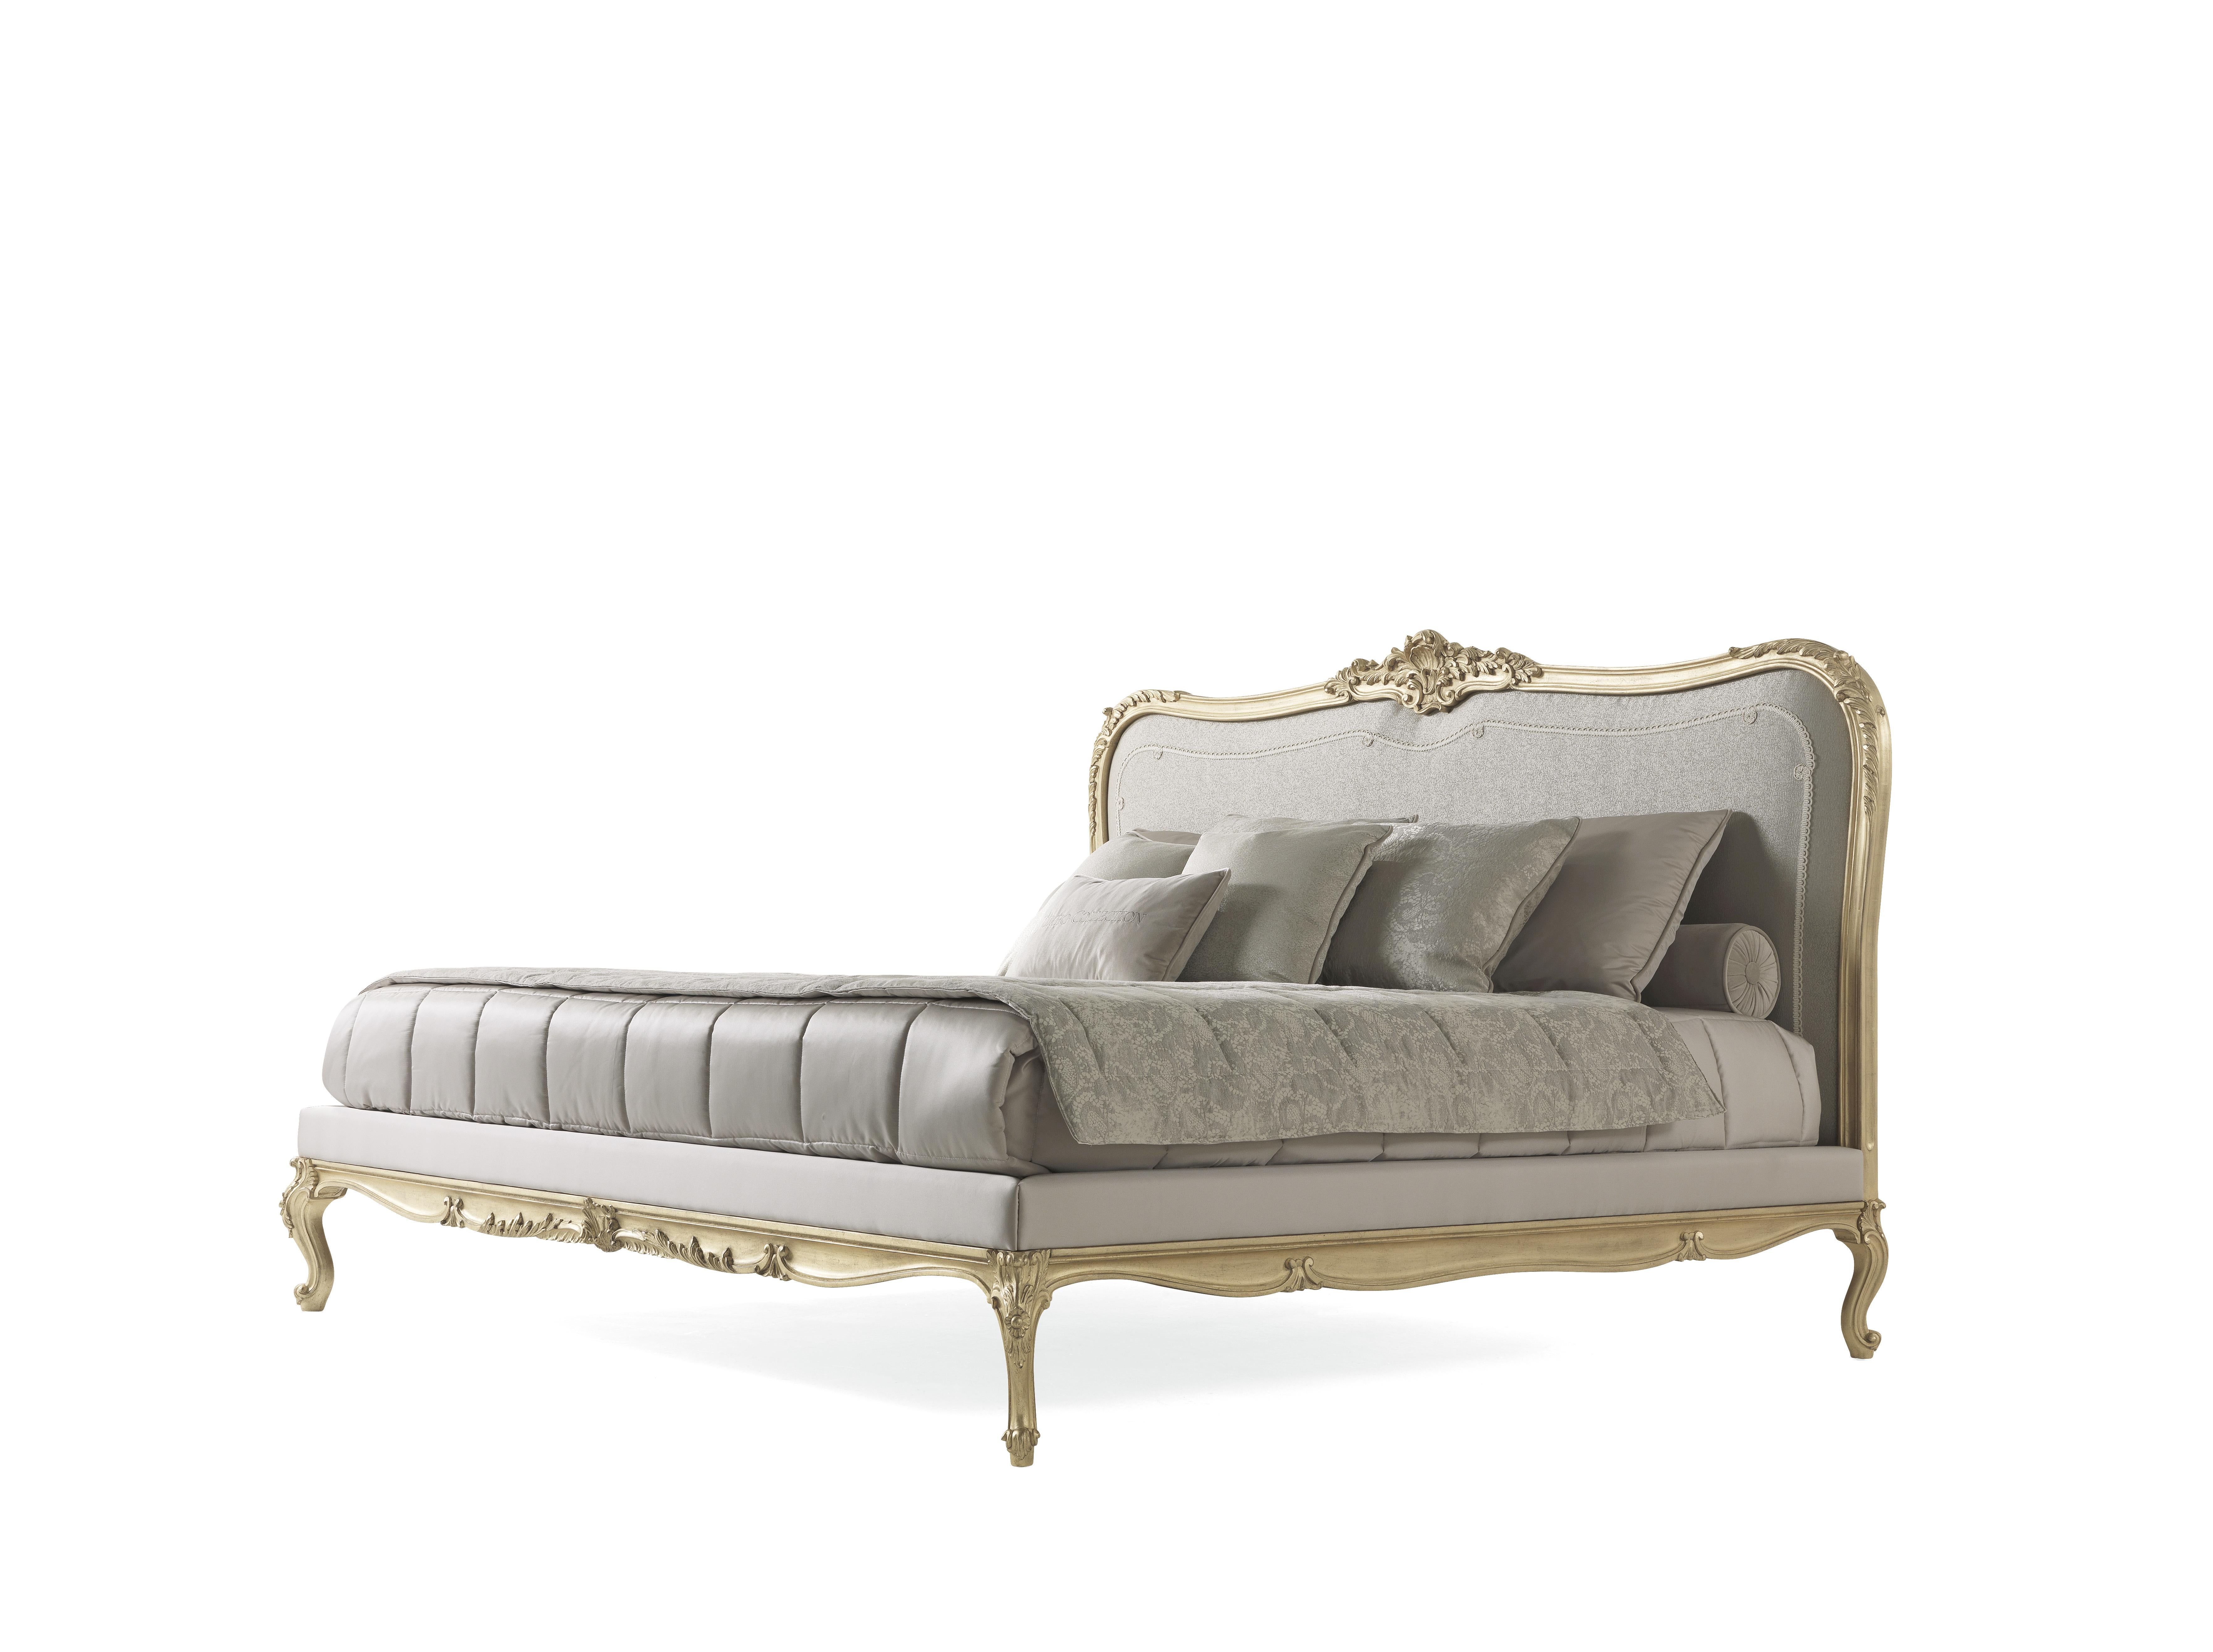 Das Bett Étamine ist der perfekte Protagonist für Einrichtungen mit einem königlichen und luxuriösen Stil. Es besticht durch seinen zeitlosen Charme, der Ausdruck eines raffinierten Geschmacks und einer anspruchsvollen Ästhetik ist. Das Bett